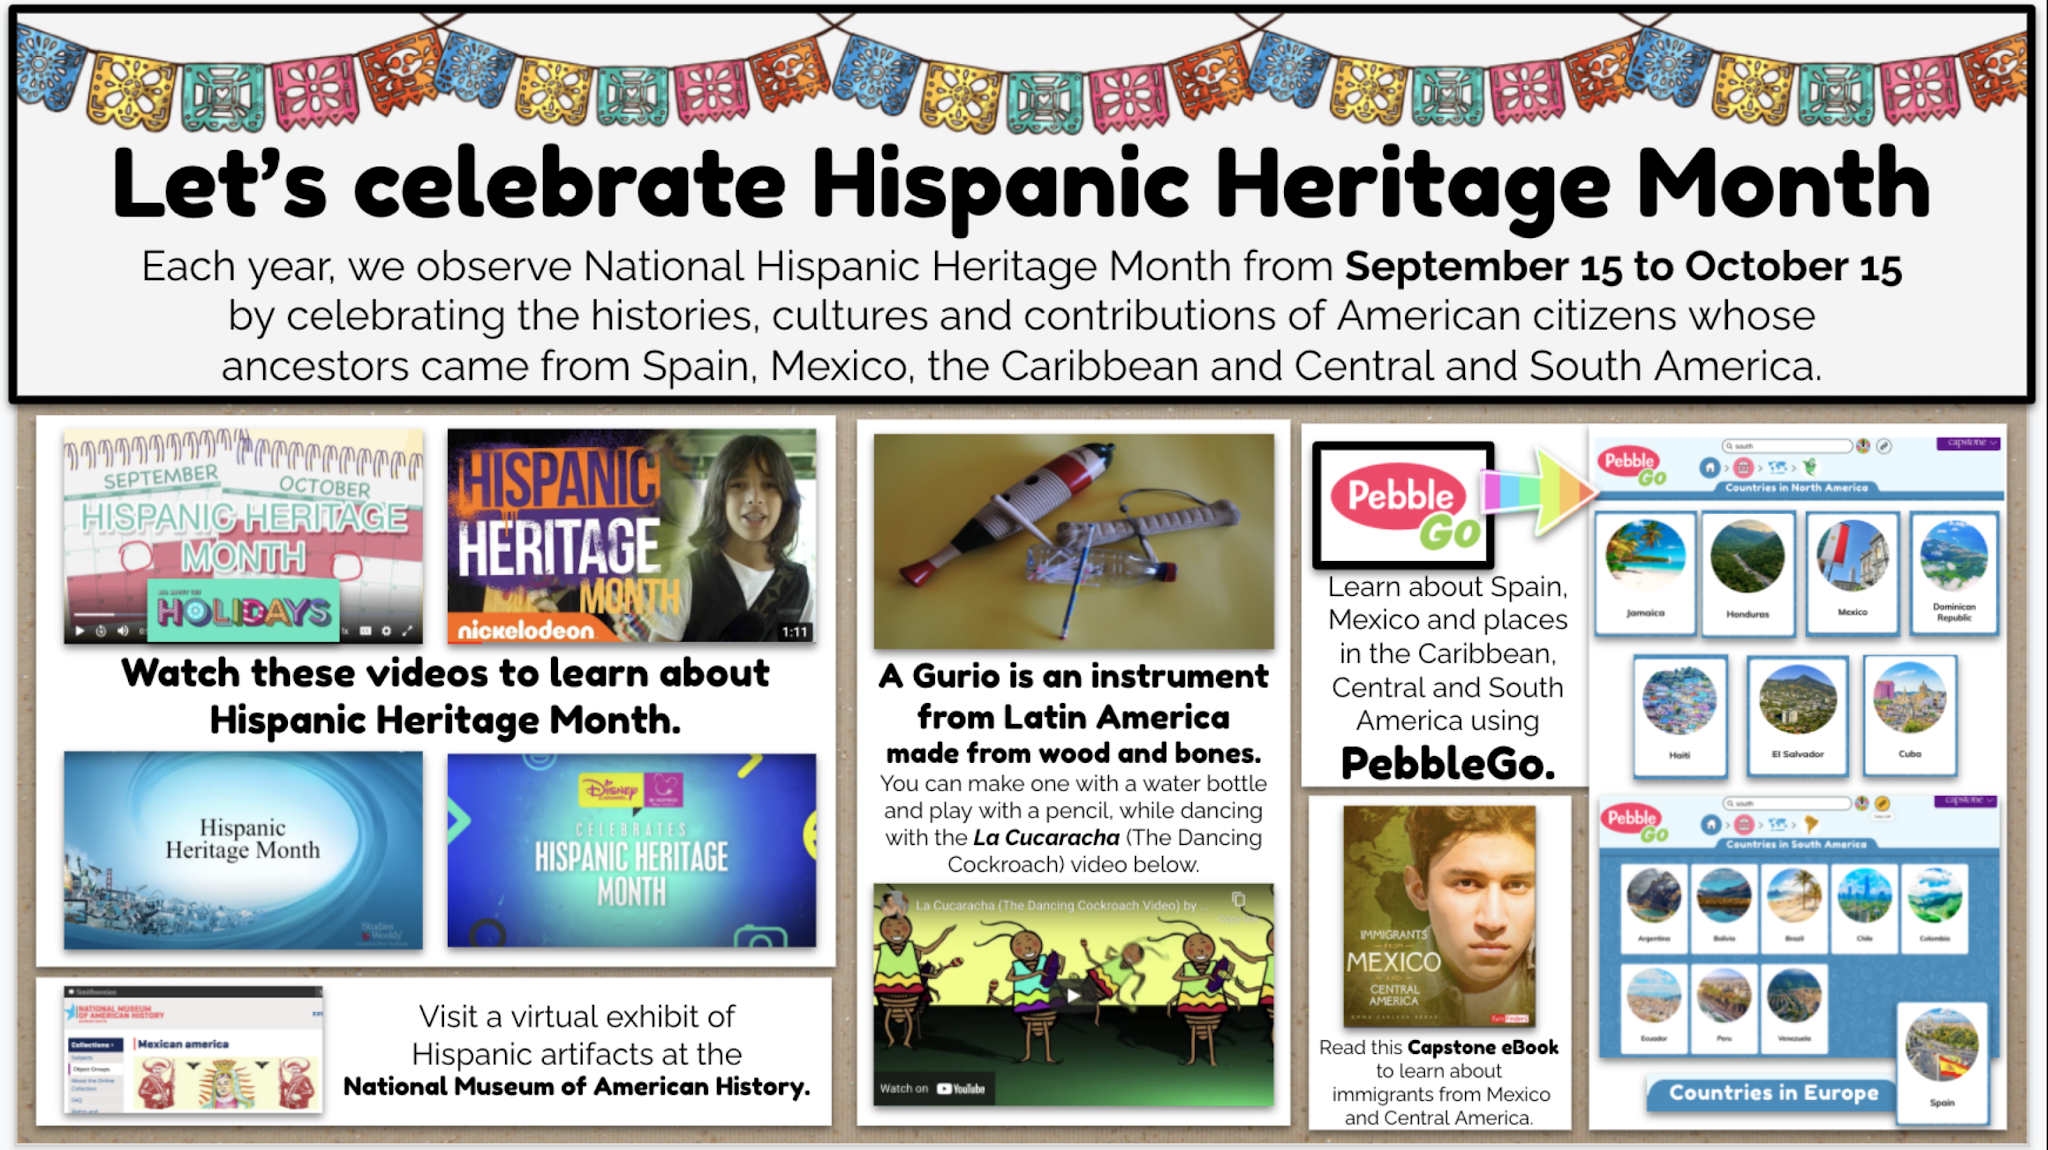 Hispanic Heritage Weekend